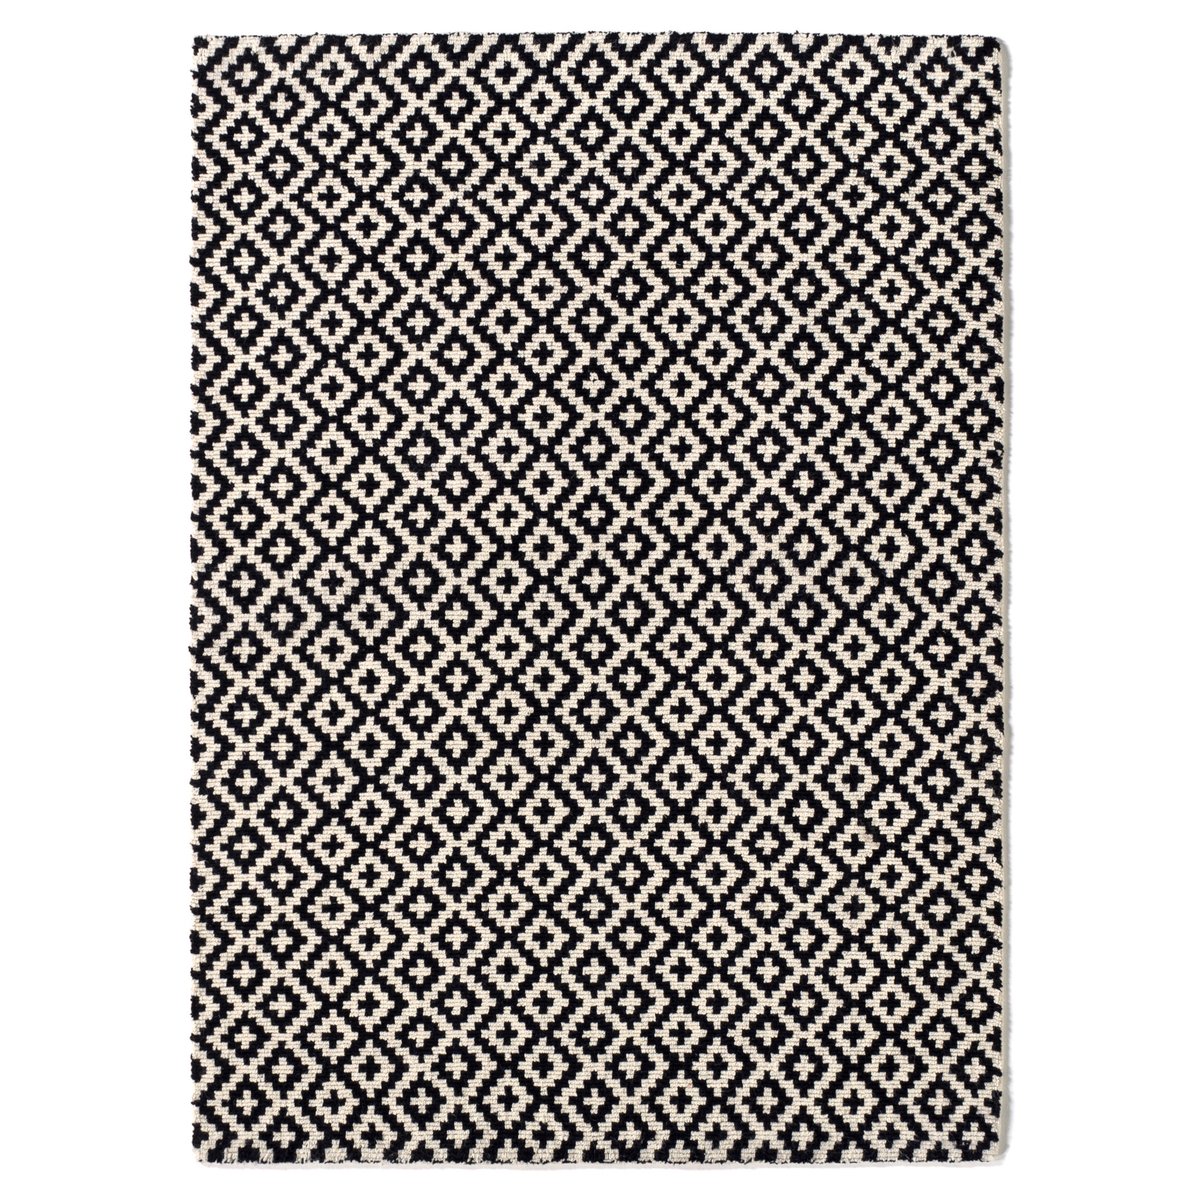 Ковер La Redoute Шерстяной ворсистый Nevio 160 x 230 см черный, размер 160 x 230 см - фото 1